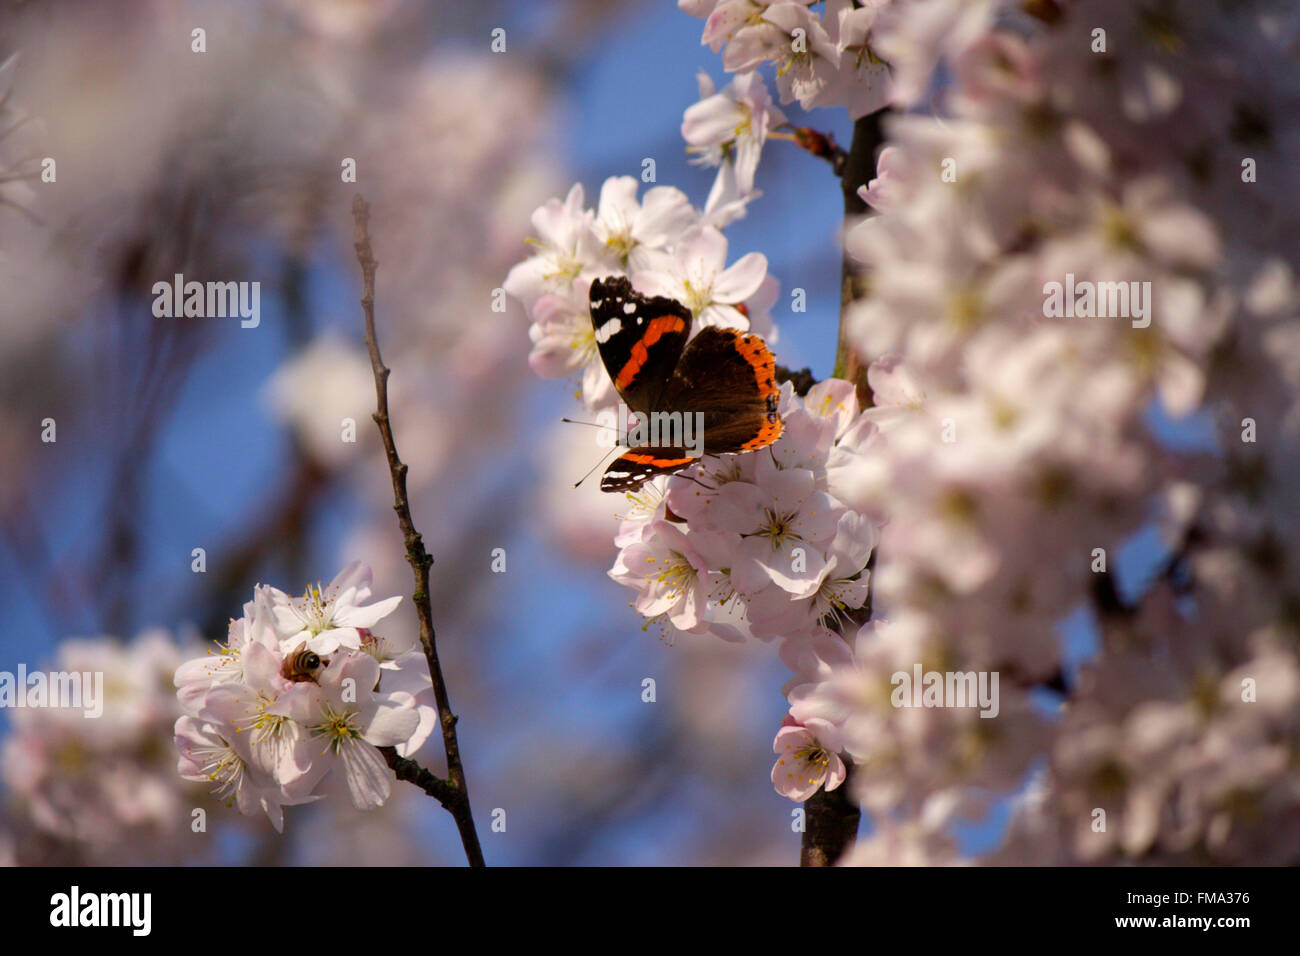 Schmetterling auf bluehendem Kirschbaum: Nationalpark Unteres Odertal/ Oderauen, Criewen, Brandenburg. Stock Photo